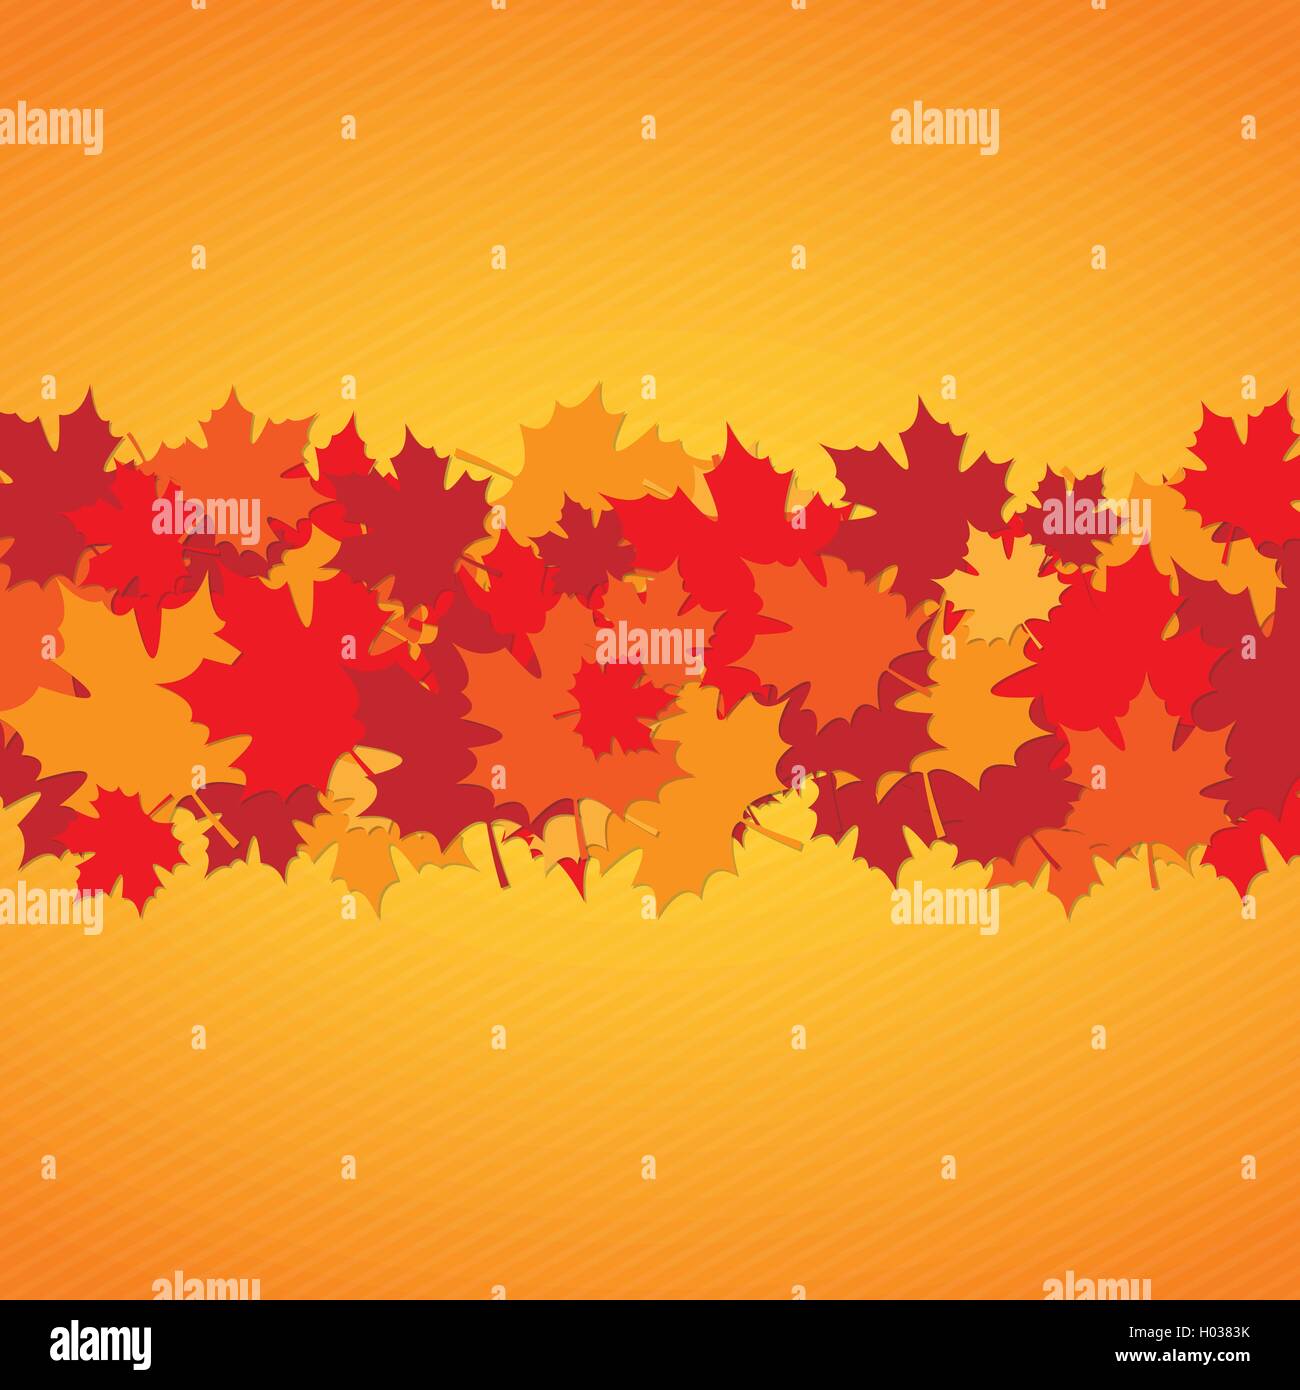 Joyeux Thanksgiving Day résumé fond avec feuilles d'érable pour la conception de votre carte de vœux Illustration de Vecteur